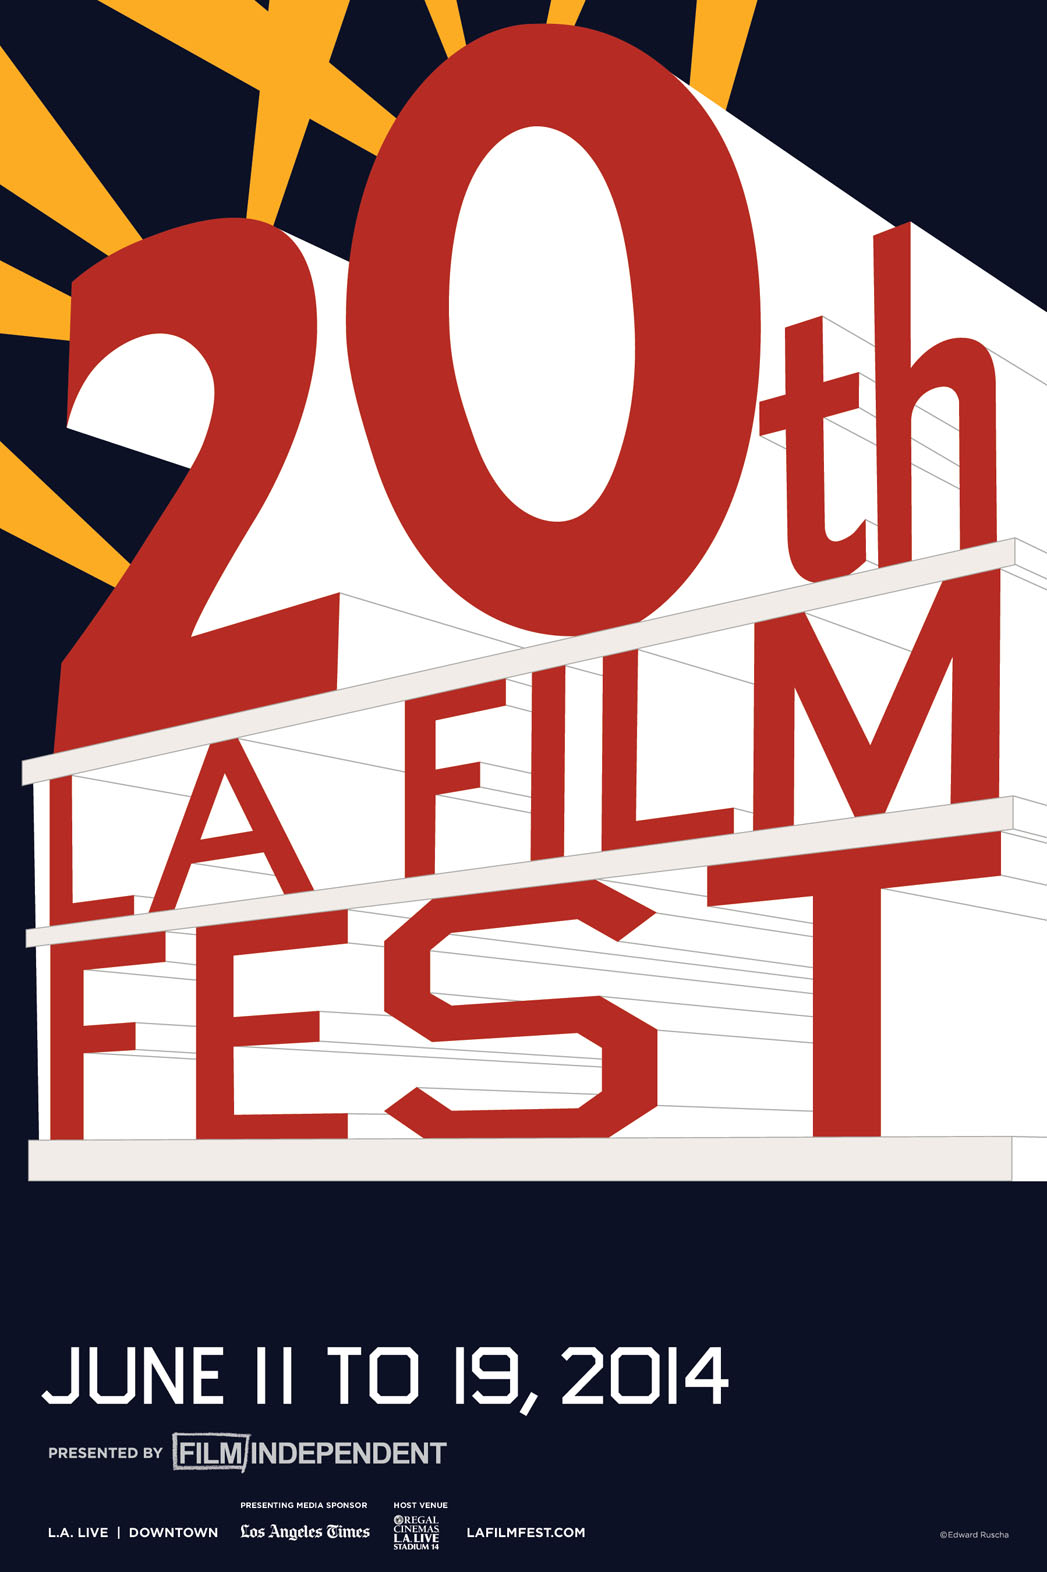 Ed Ruscha's poster for the LA Film Festival